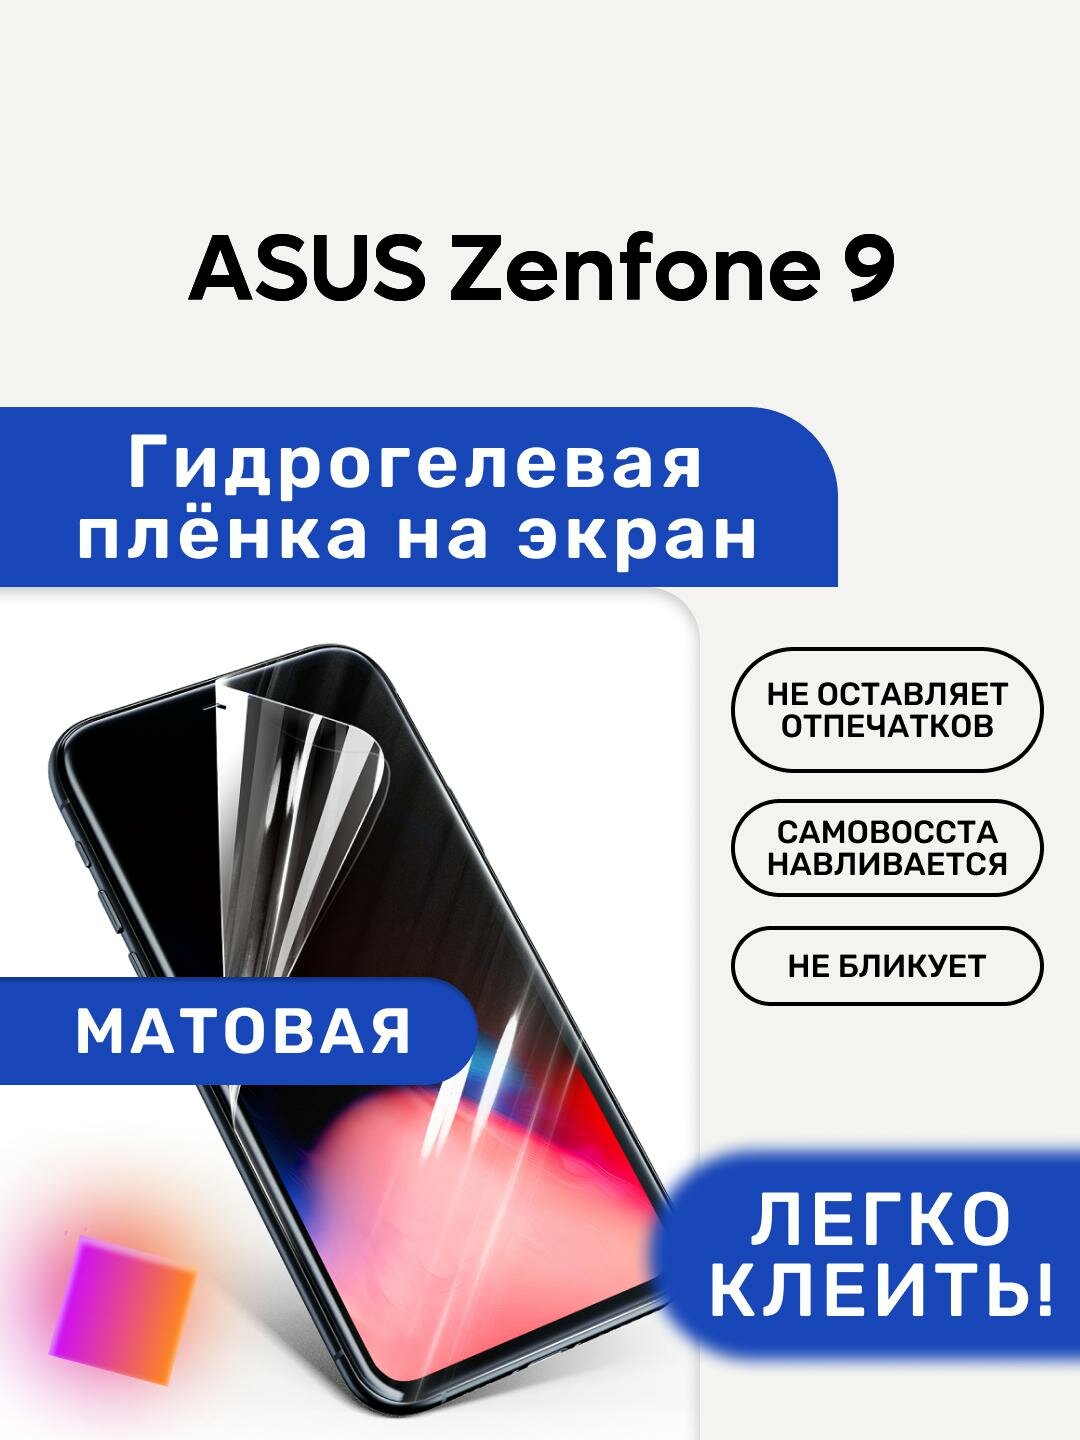 Матовая Гидрогелевая плёнка, полиуретановая, защита экрана ASUS Zenfone 9